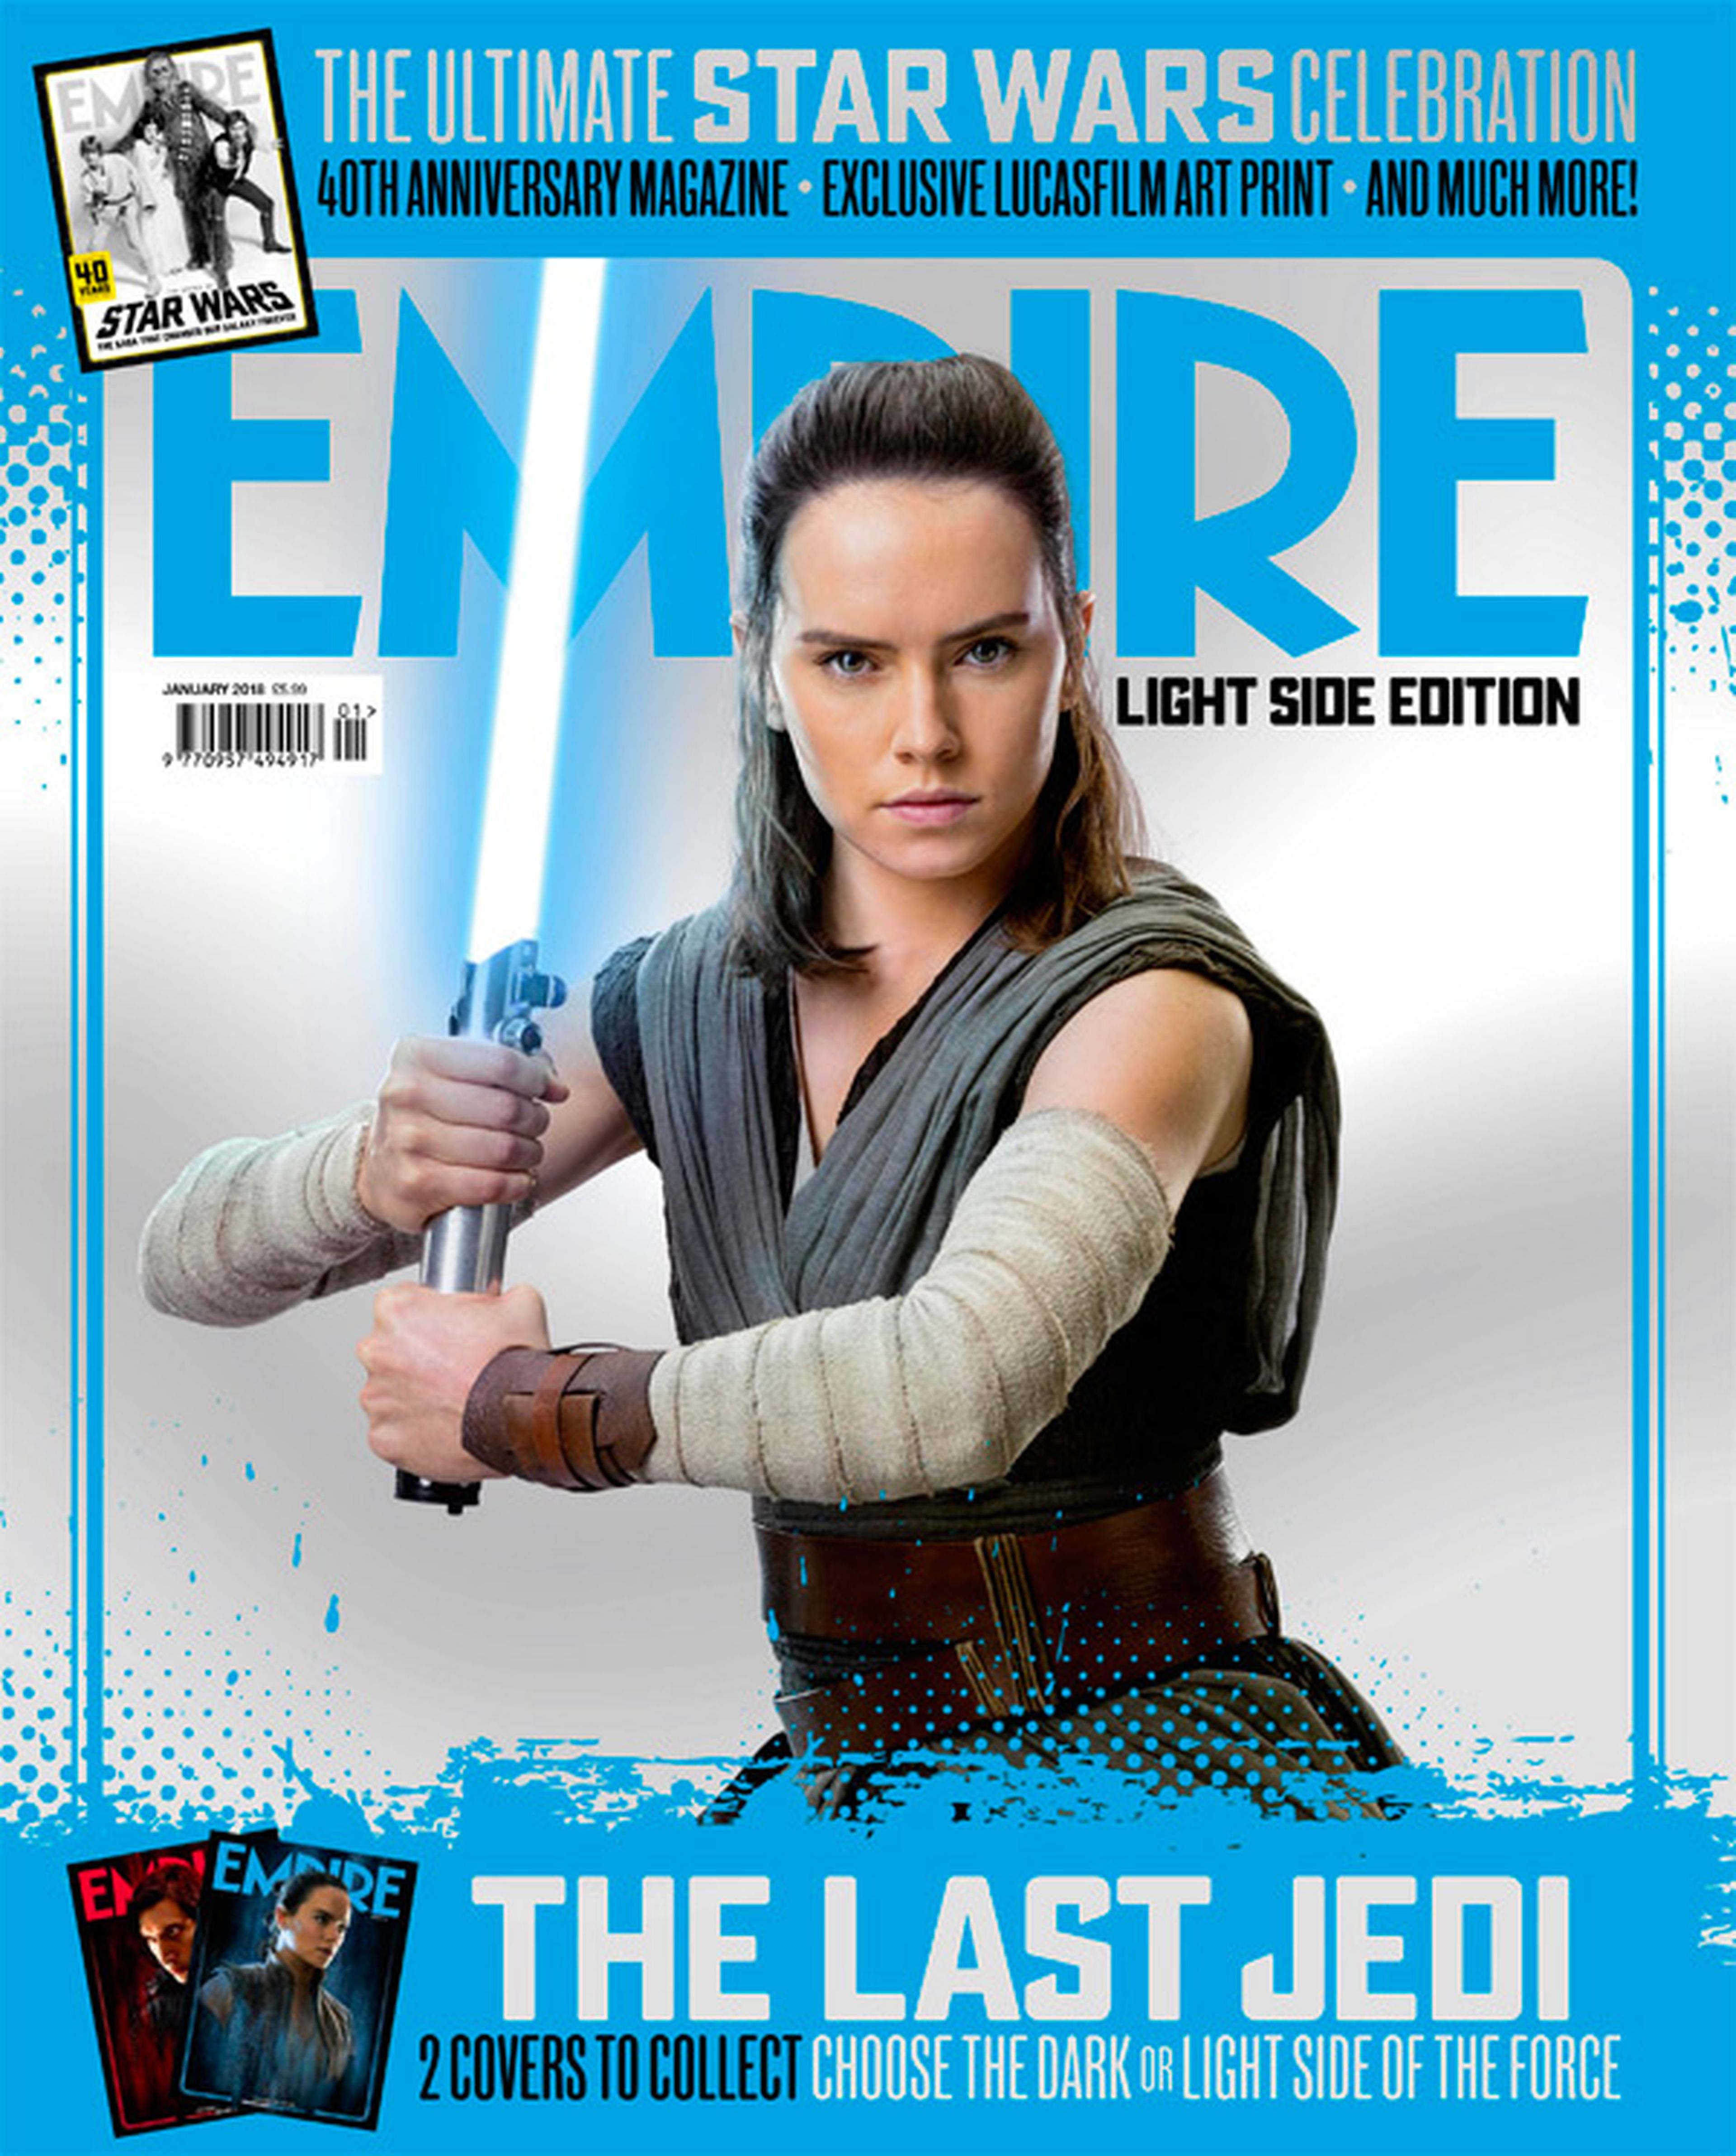 Rey Revista Empire